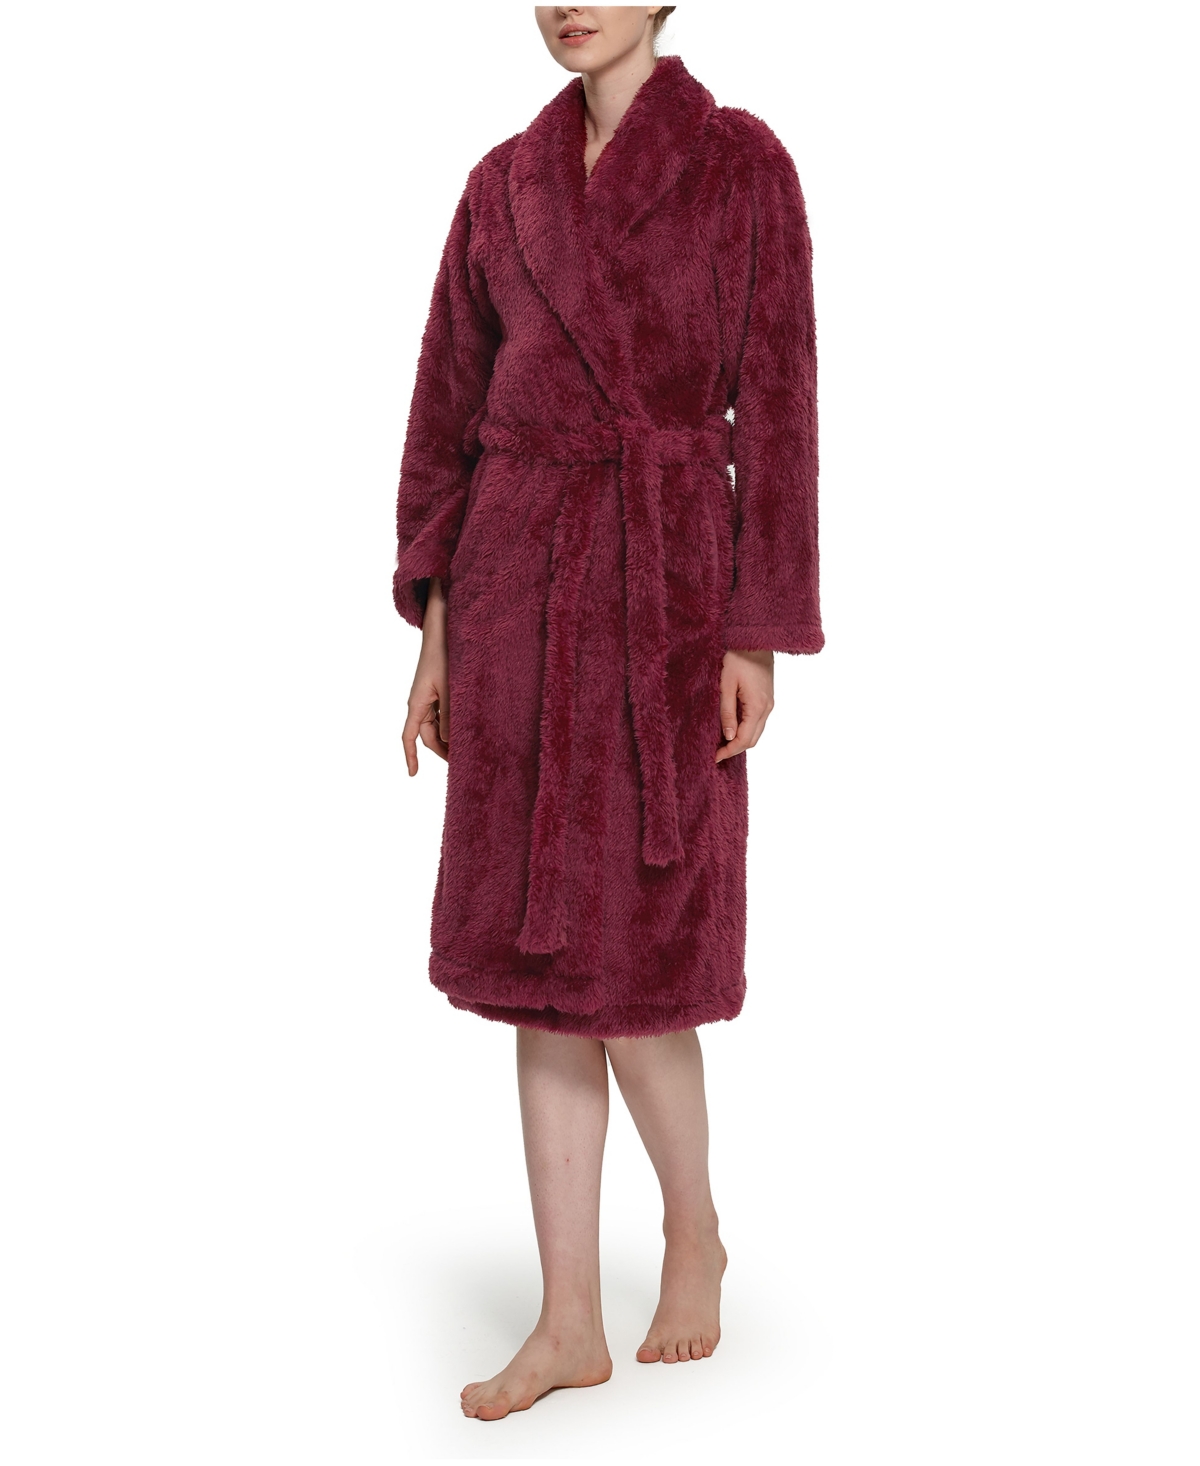 Berkshire Women's Extra-Fluffy Shawl Cardigan Robe